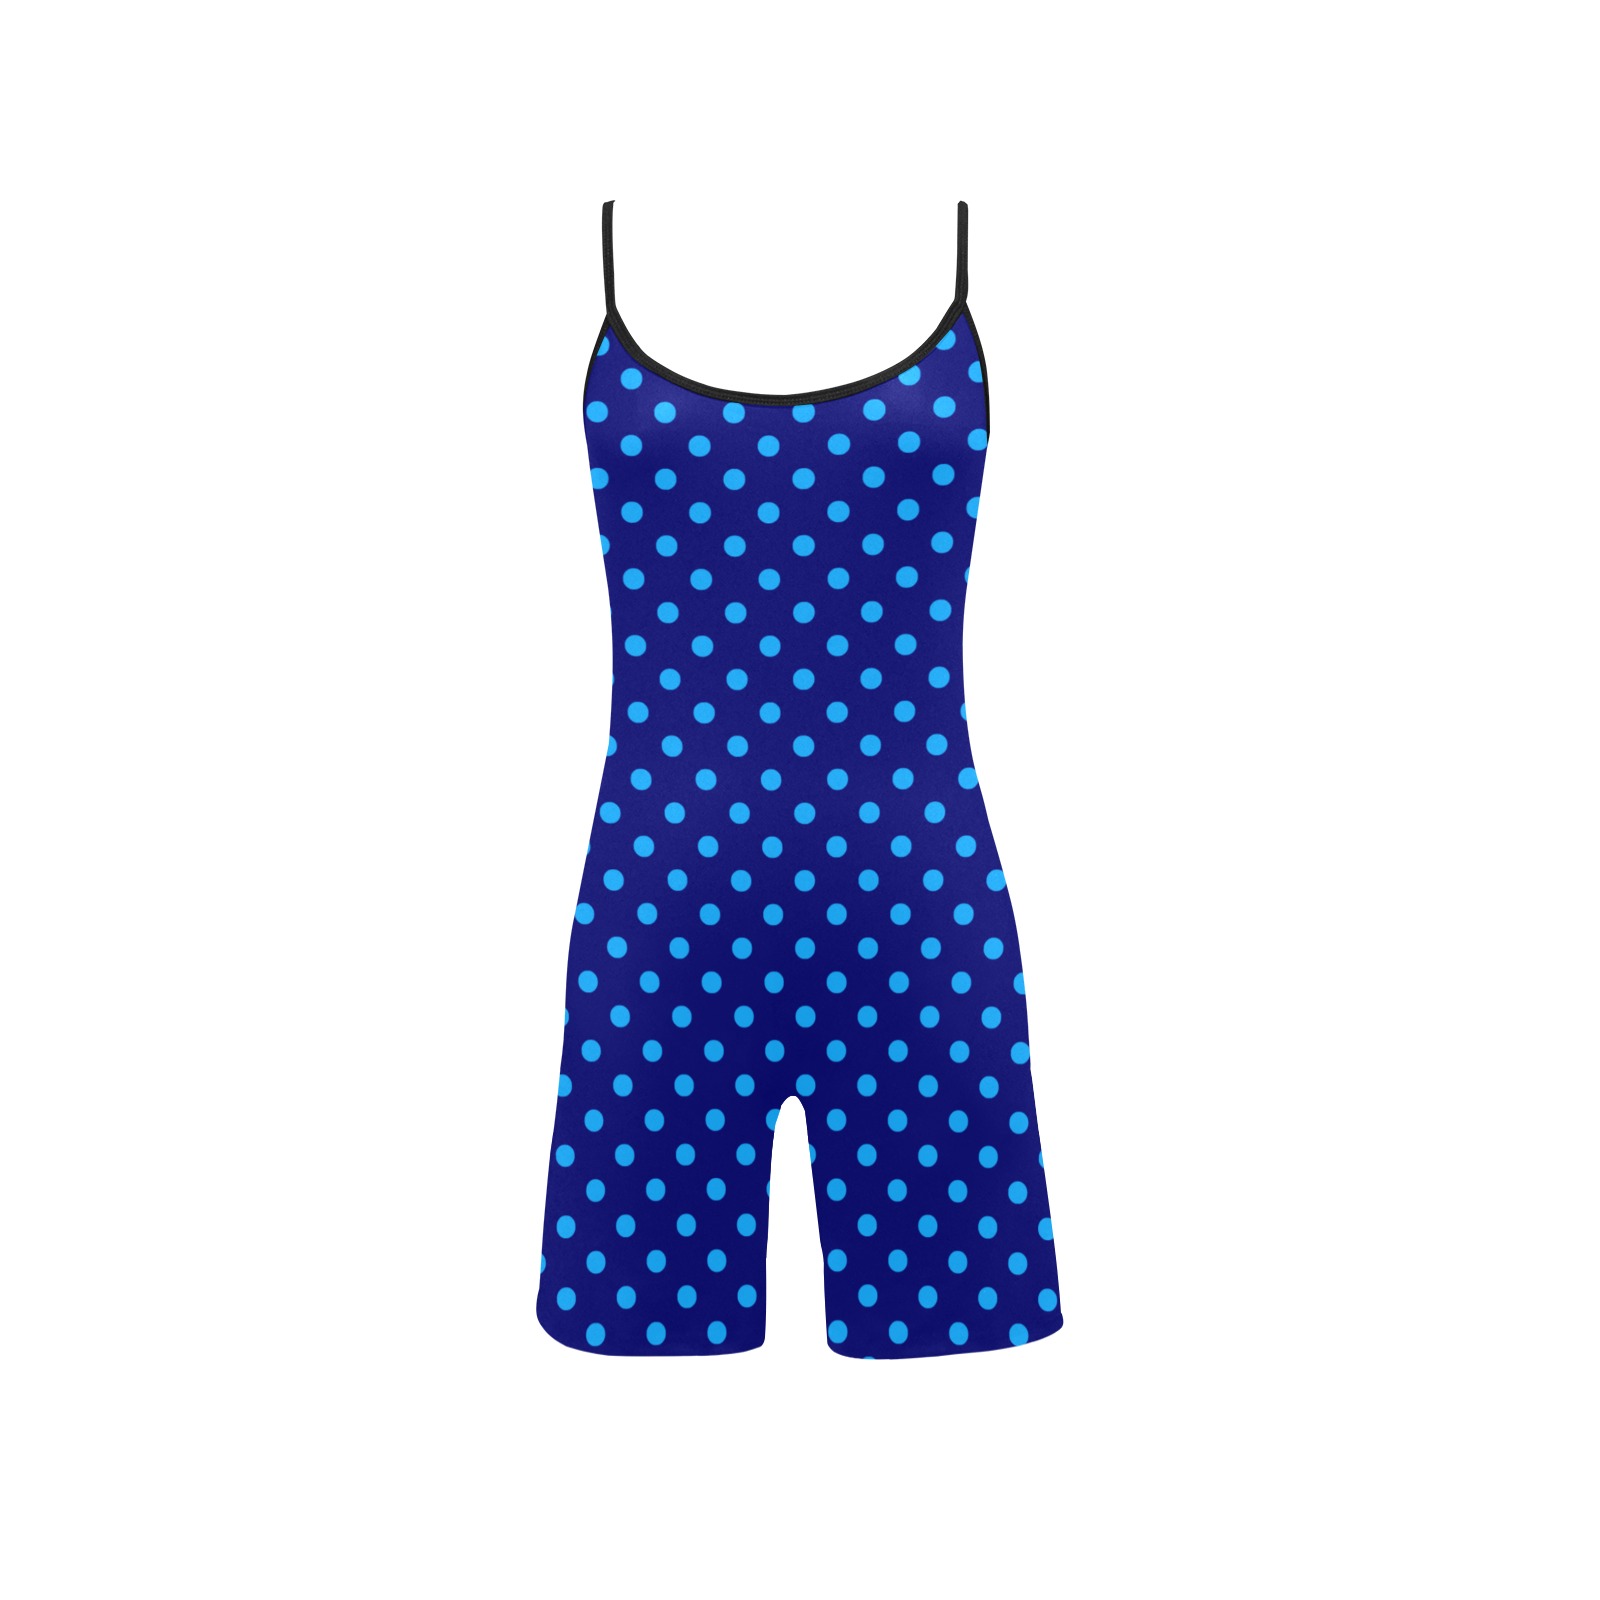 Light Blue Polka Dots on Blue Women's Short Yoga Bodysuit